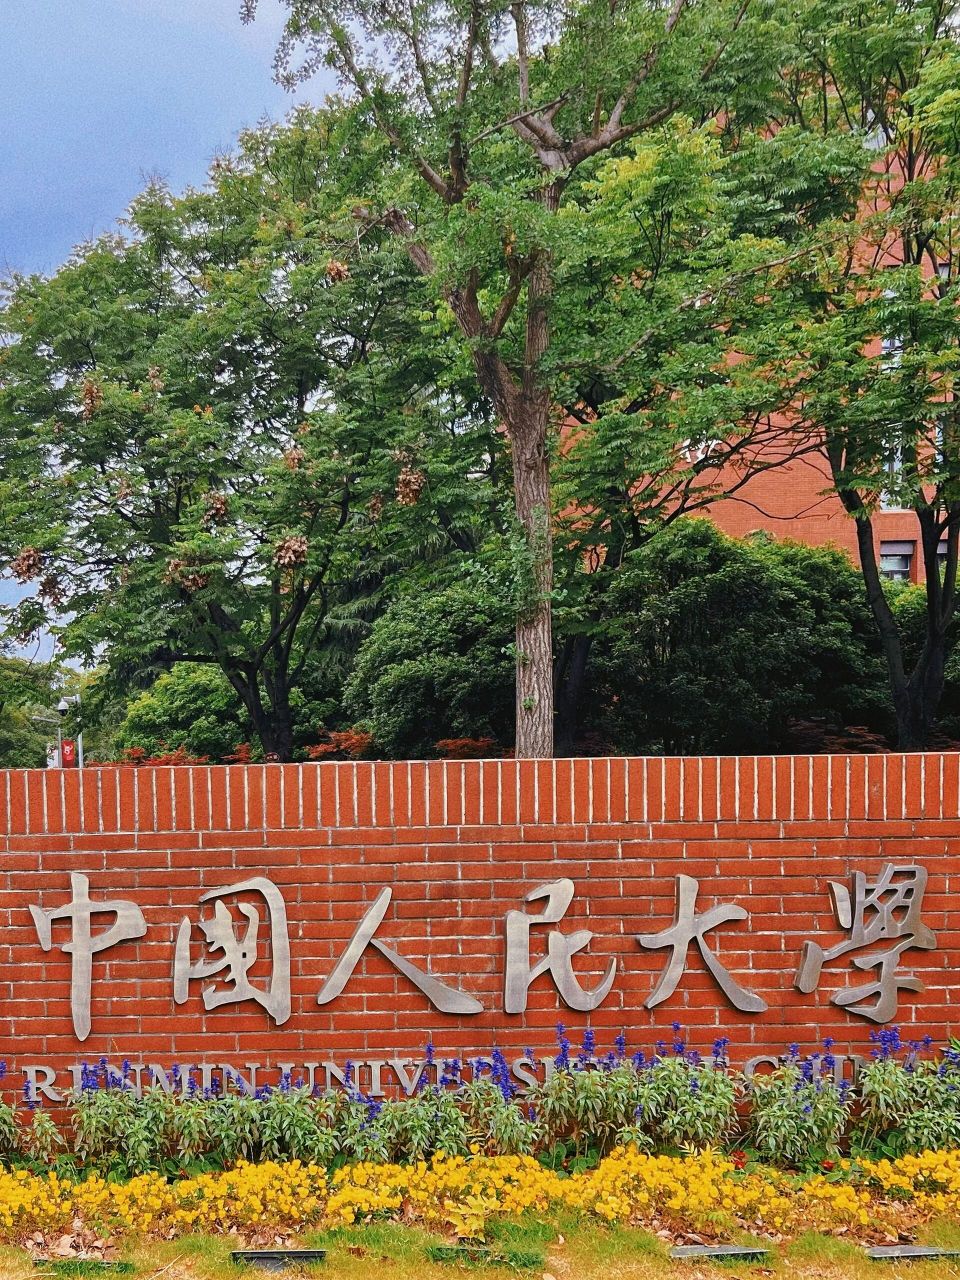 中国人民大学苏州校区 中国人民大学苏州校区,园林式学校,不大,但很舒